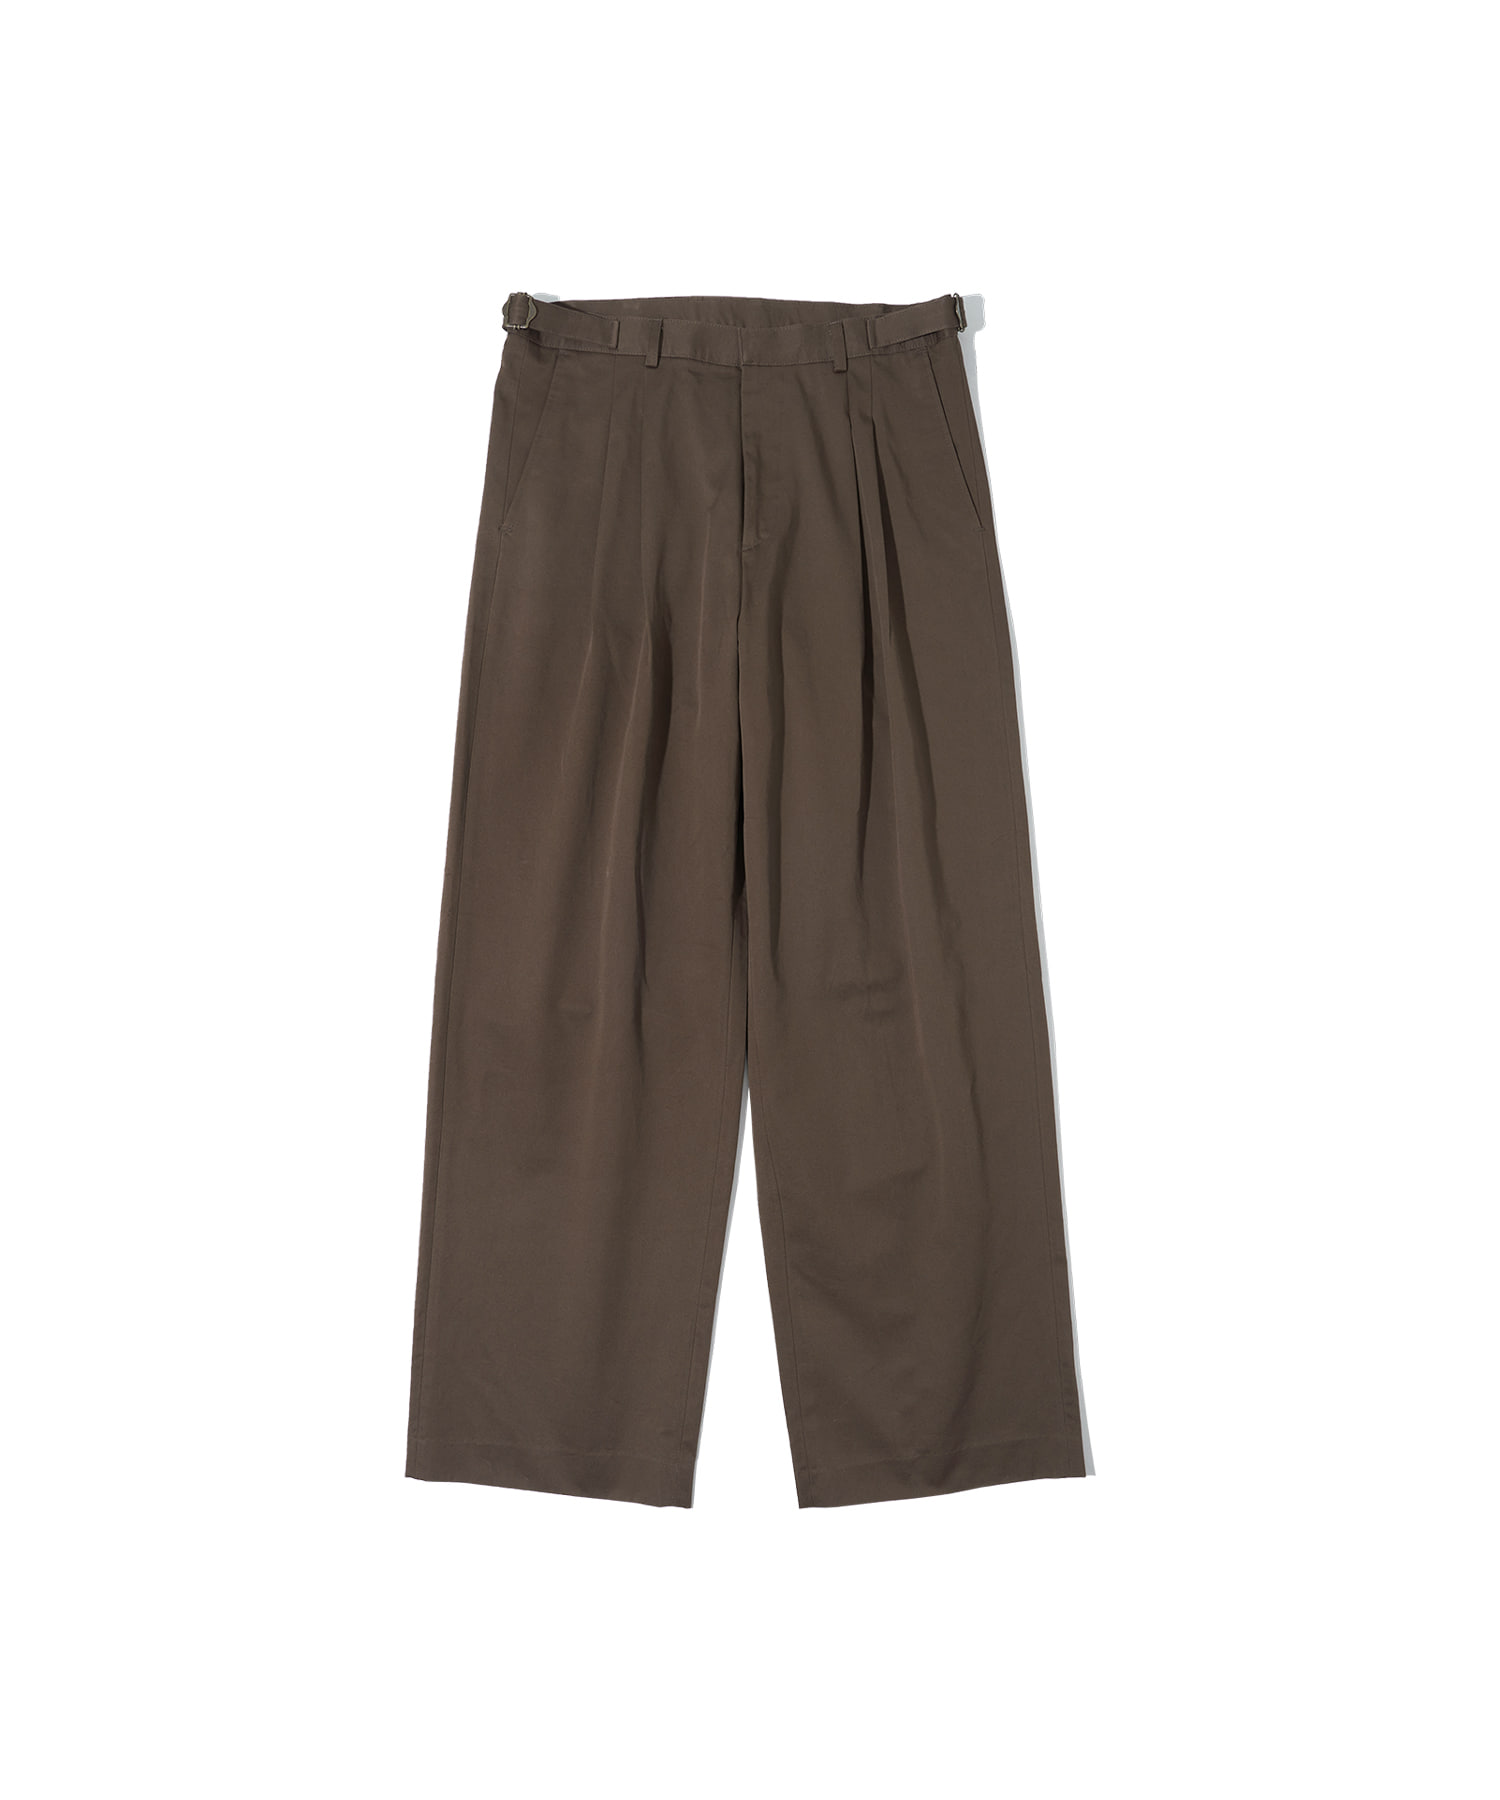 P1000 Piemonte chino wide pants_Dark brown